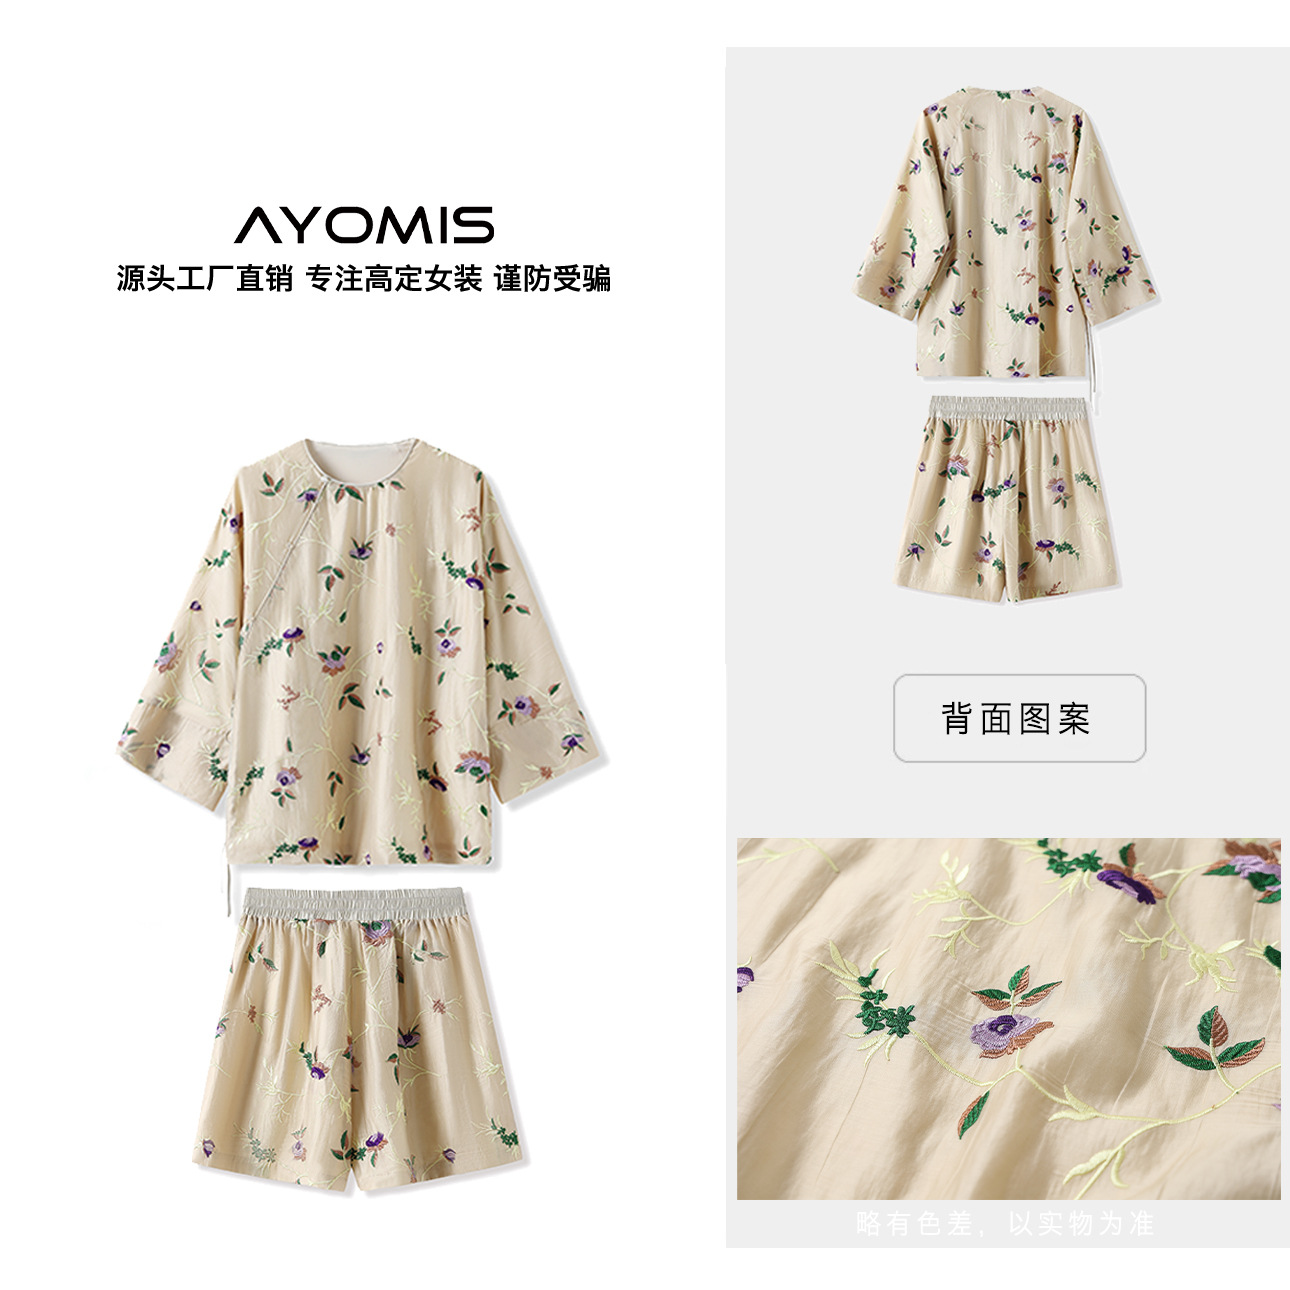 新中式新款花朵刺绣国风短袖短裤两件套轻奢复古气质套装 M4240